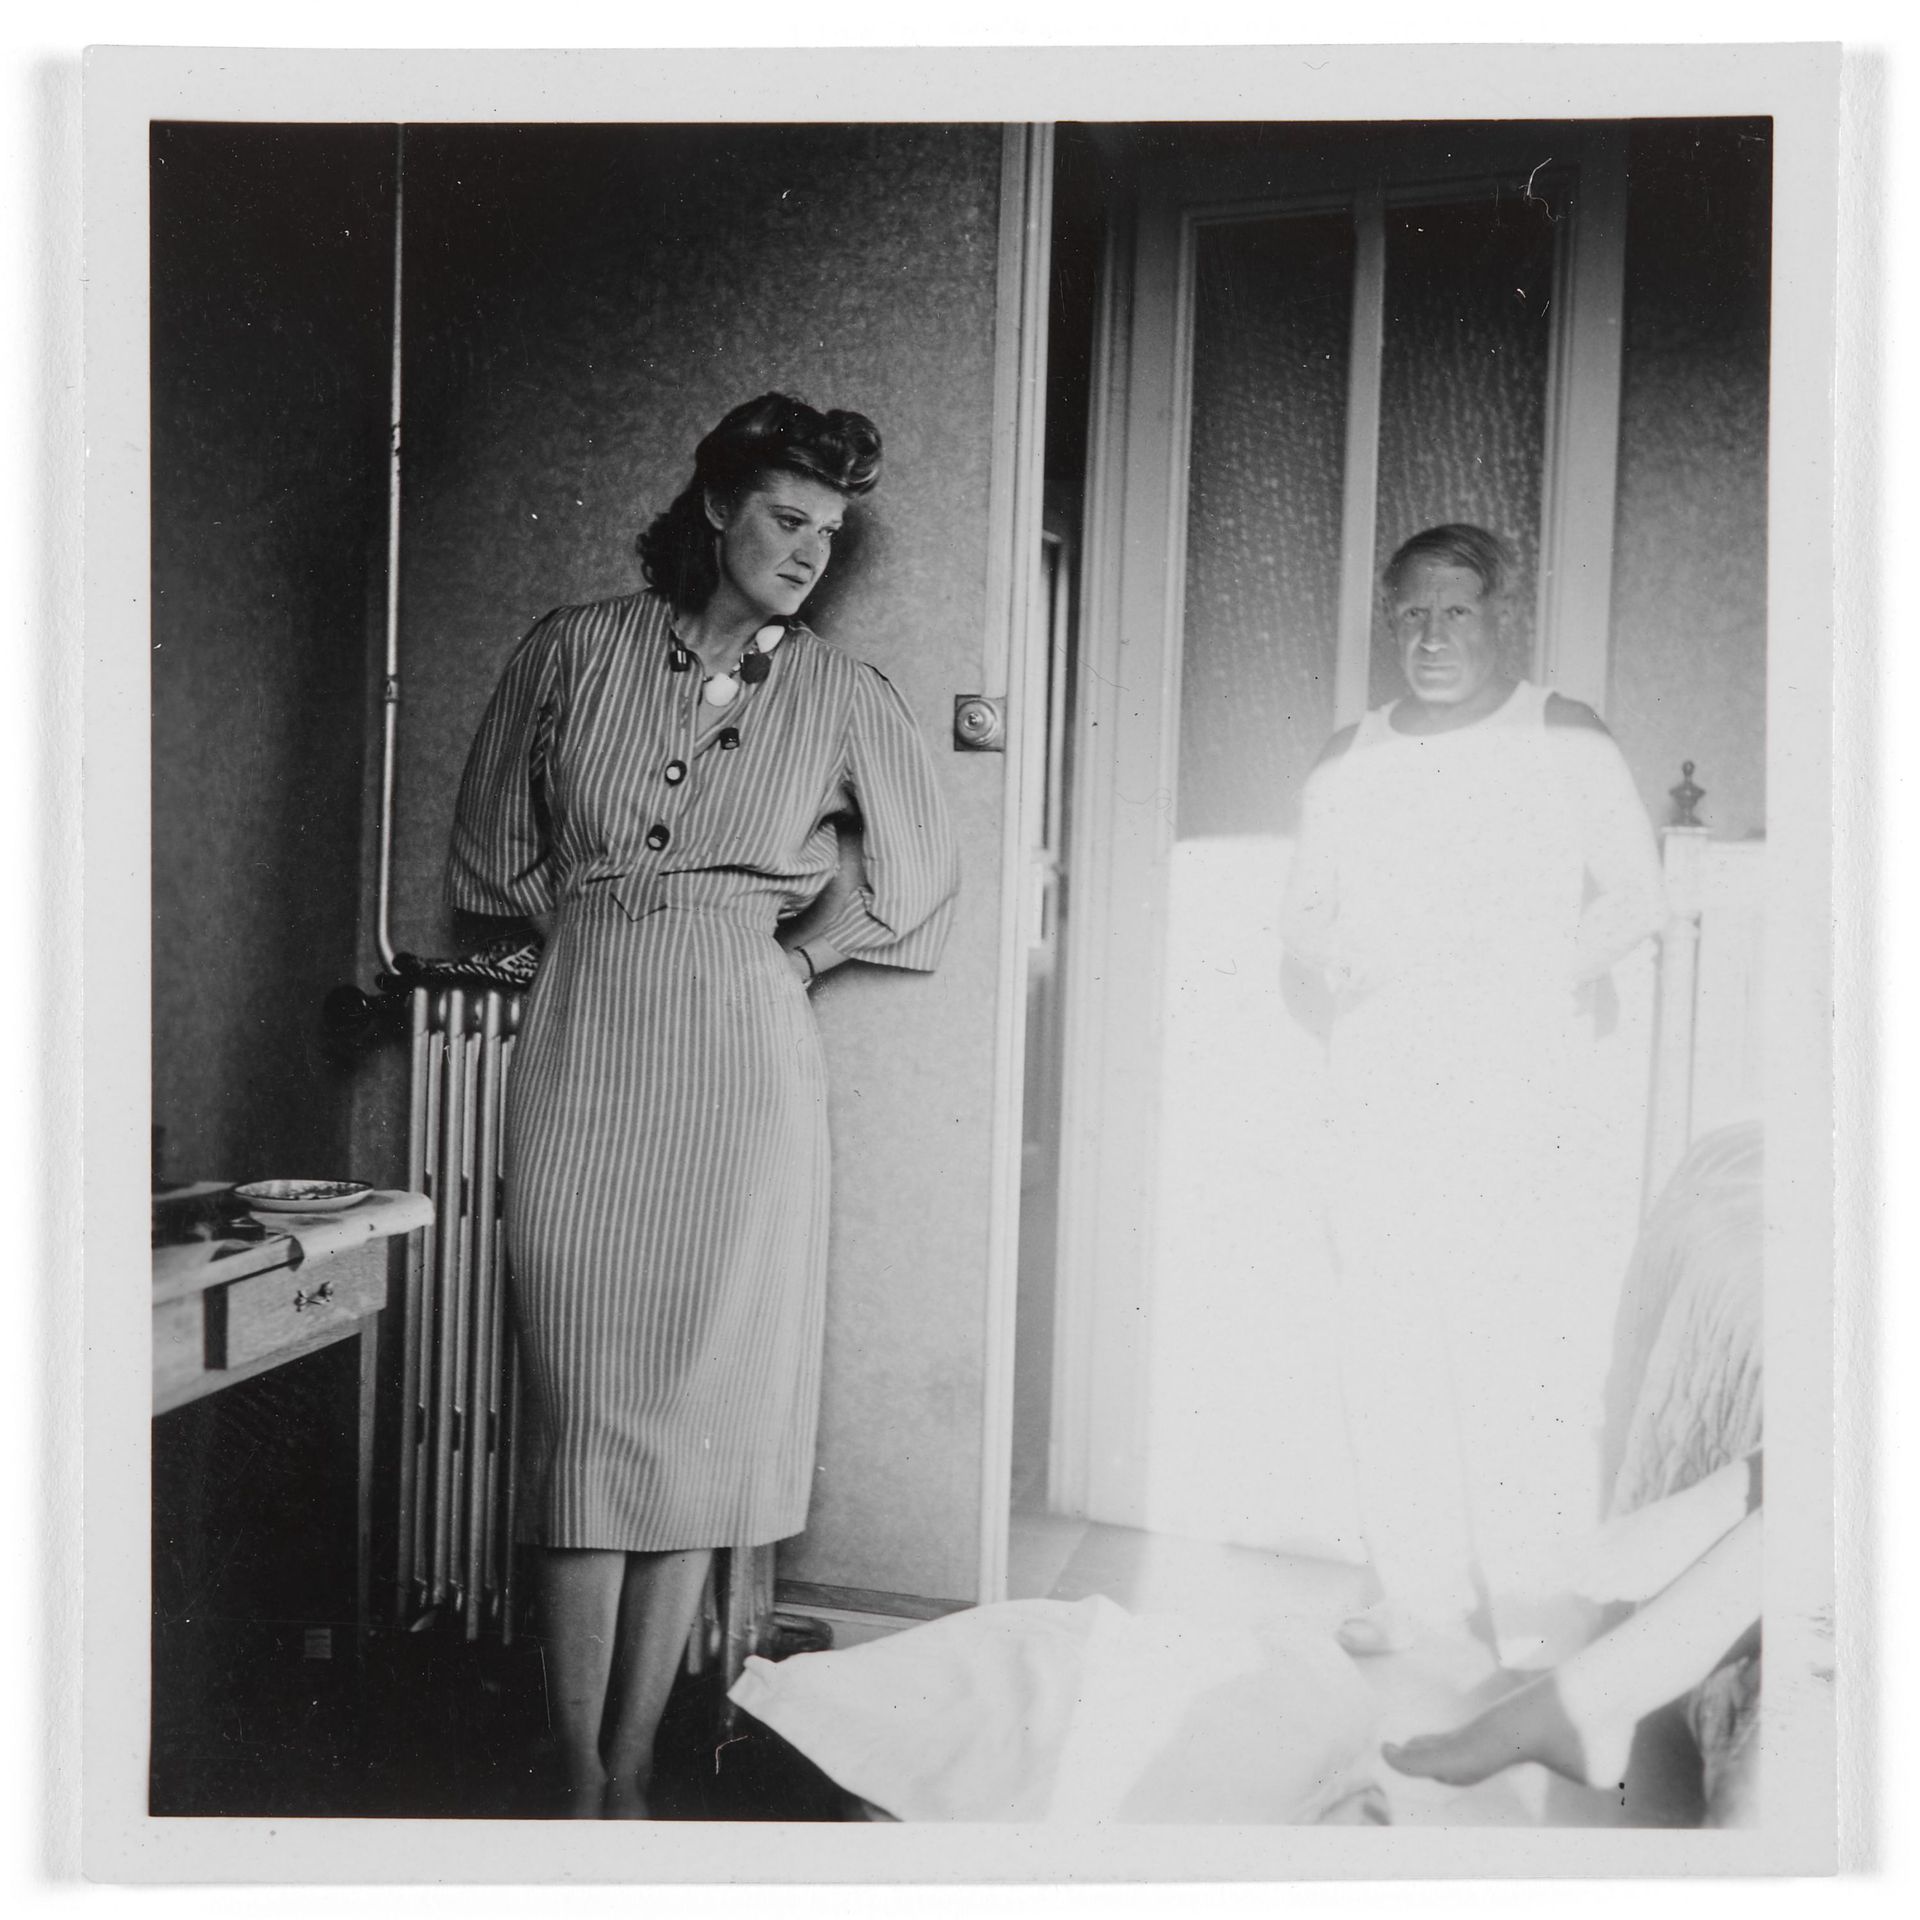 Mary Callery et Pablo Picasso inondé de lumière.